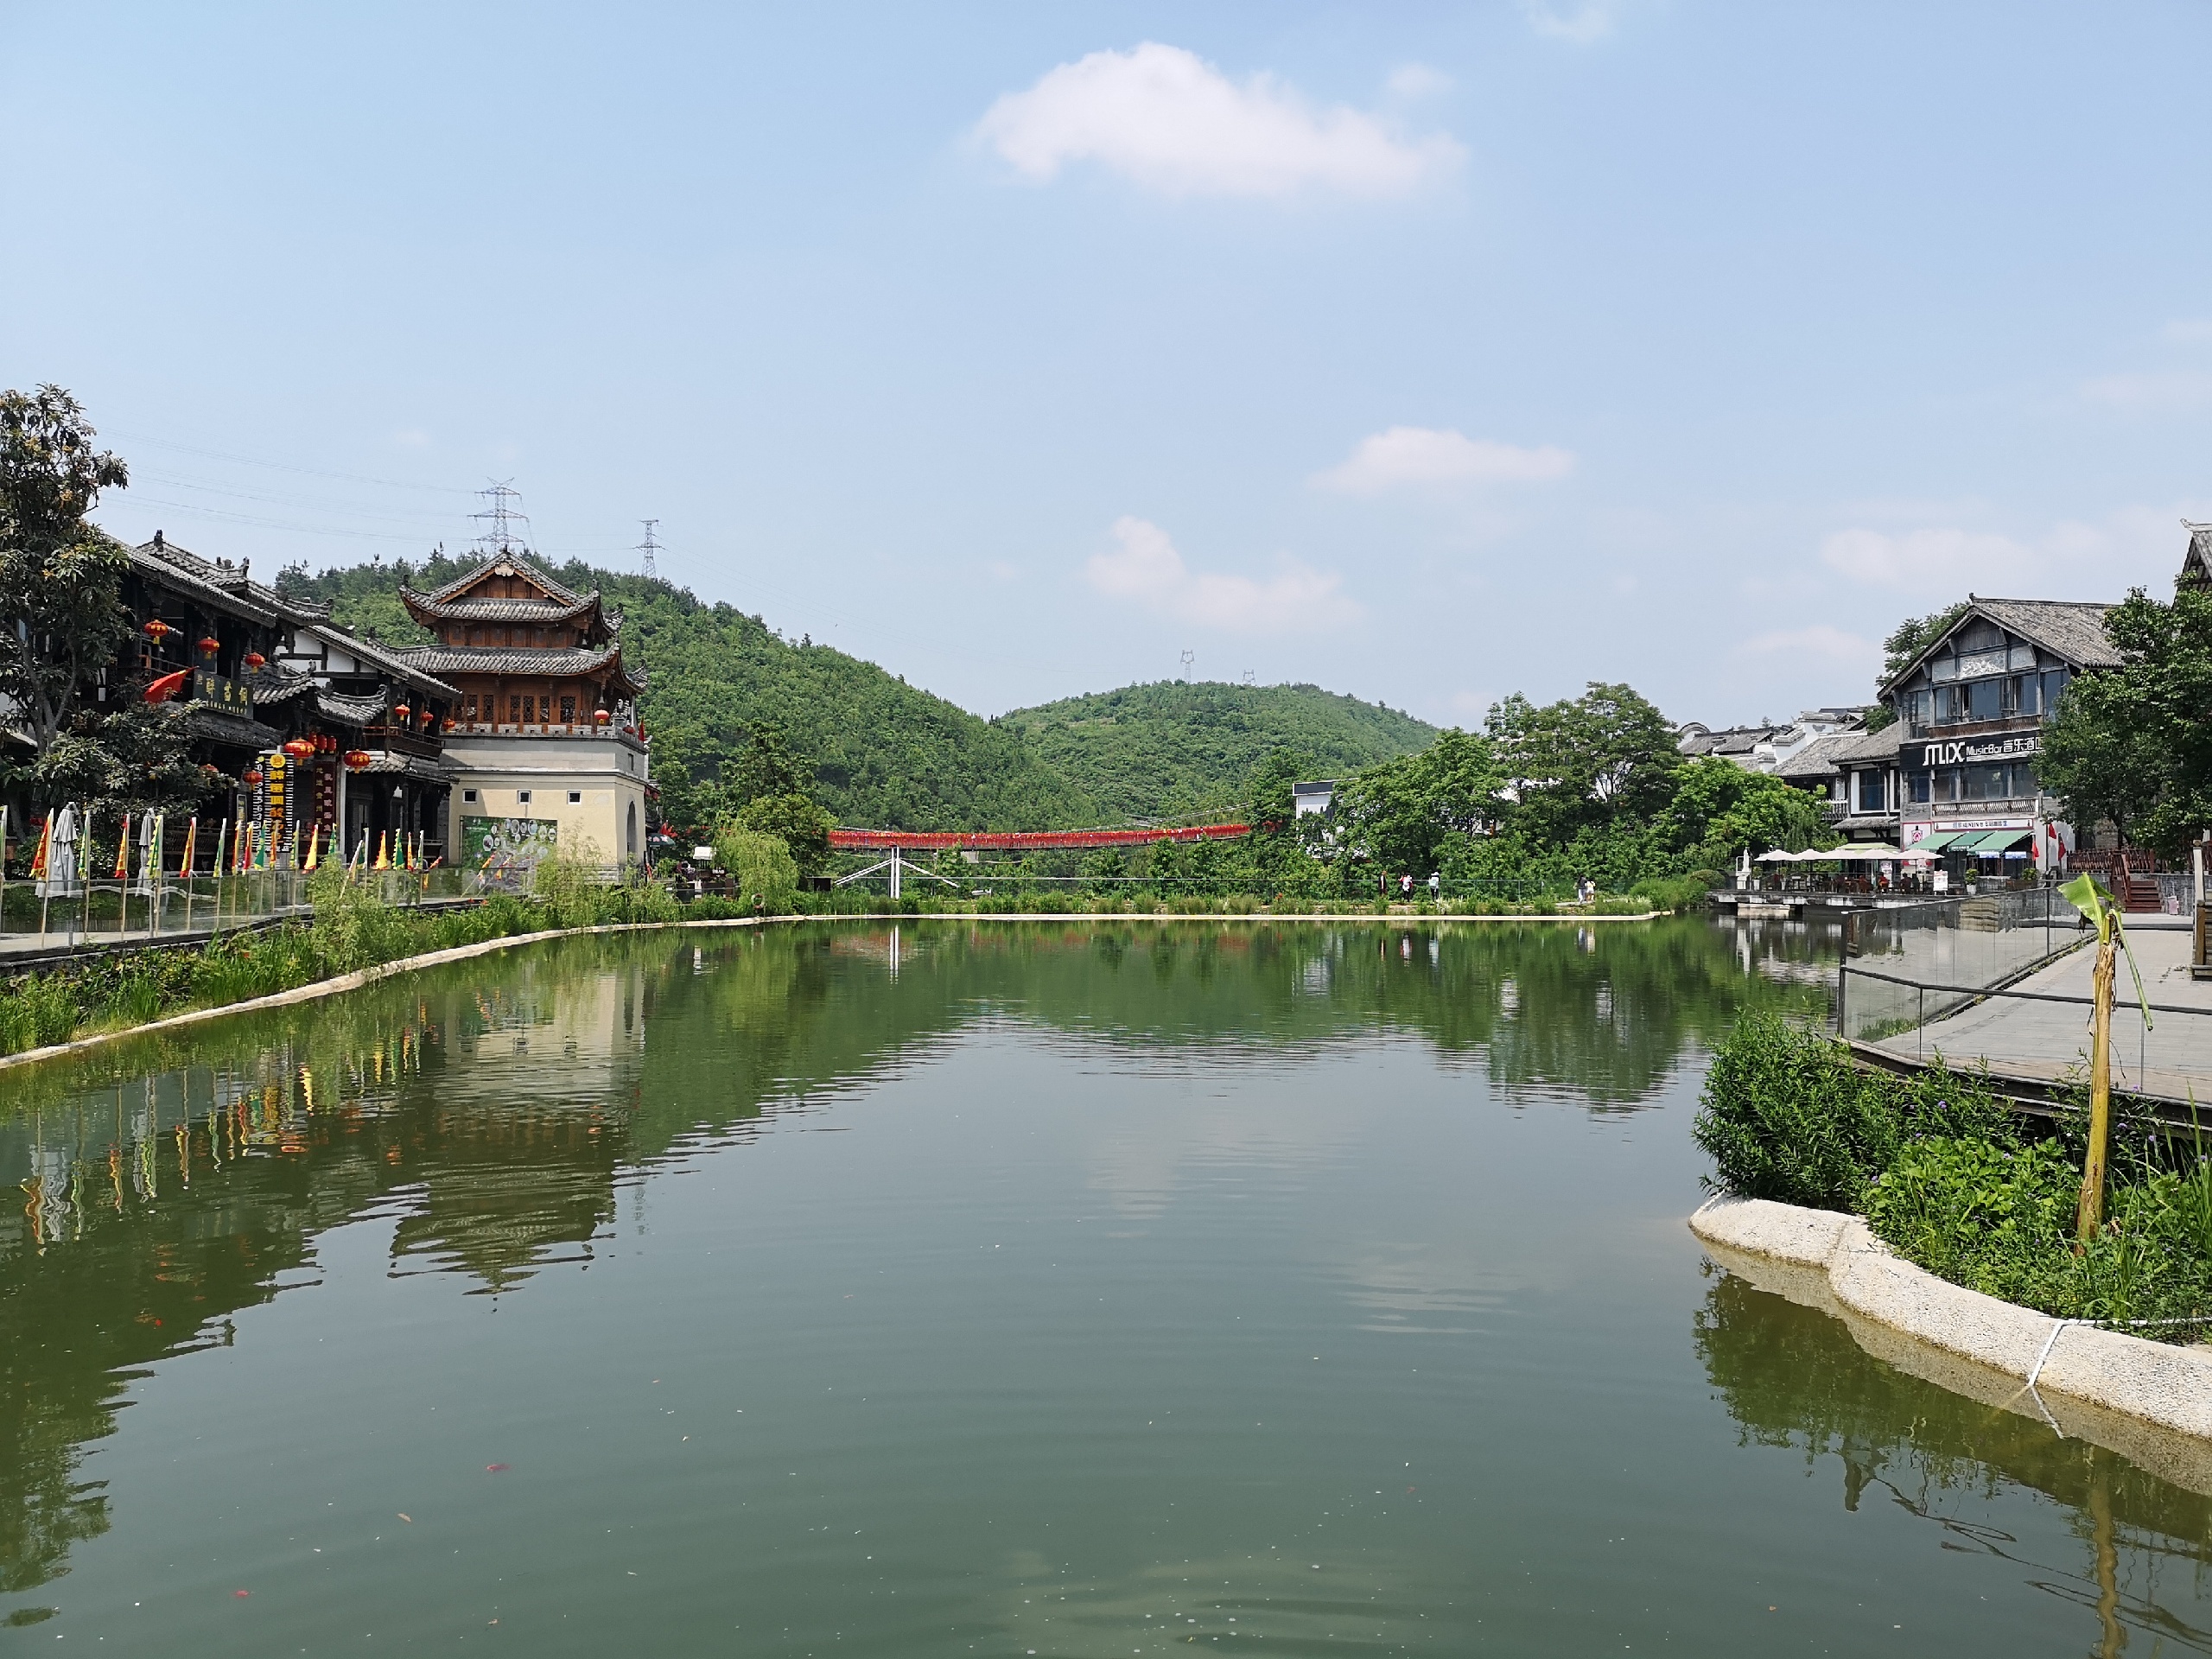 贵州龙里县双龙镇有个小众旅游地吃喝玩乐都有黔南双龙镇